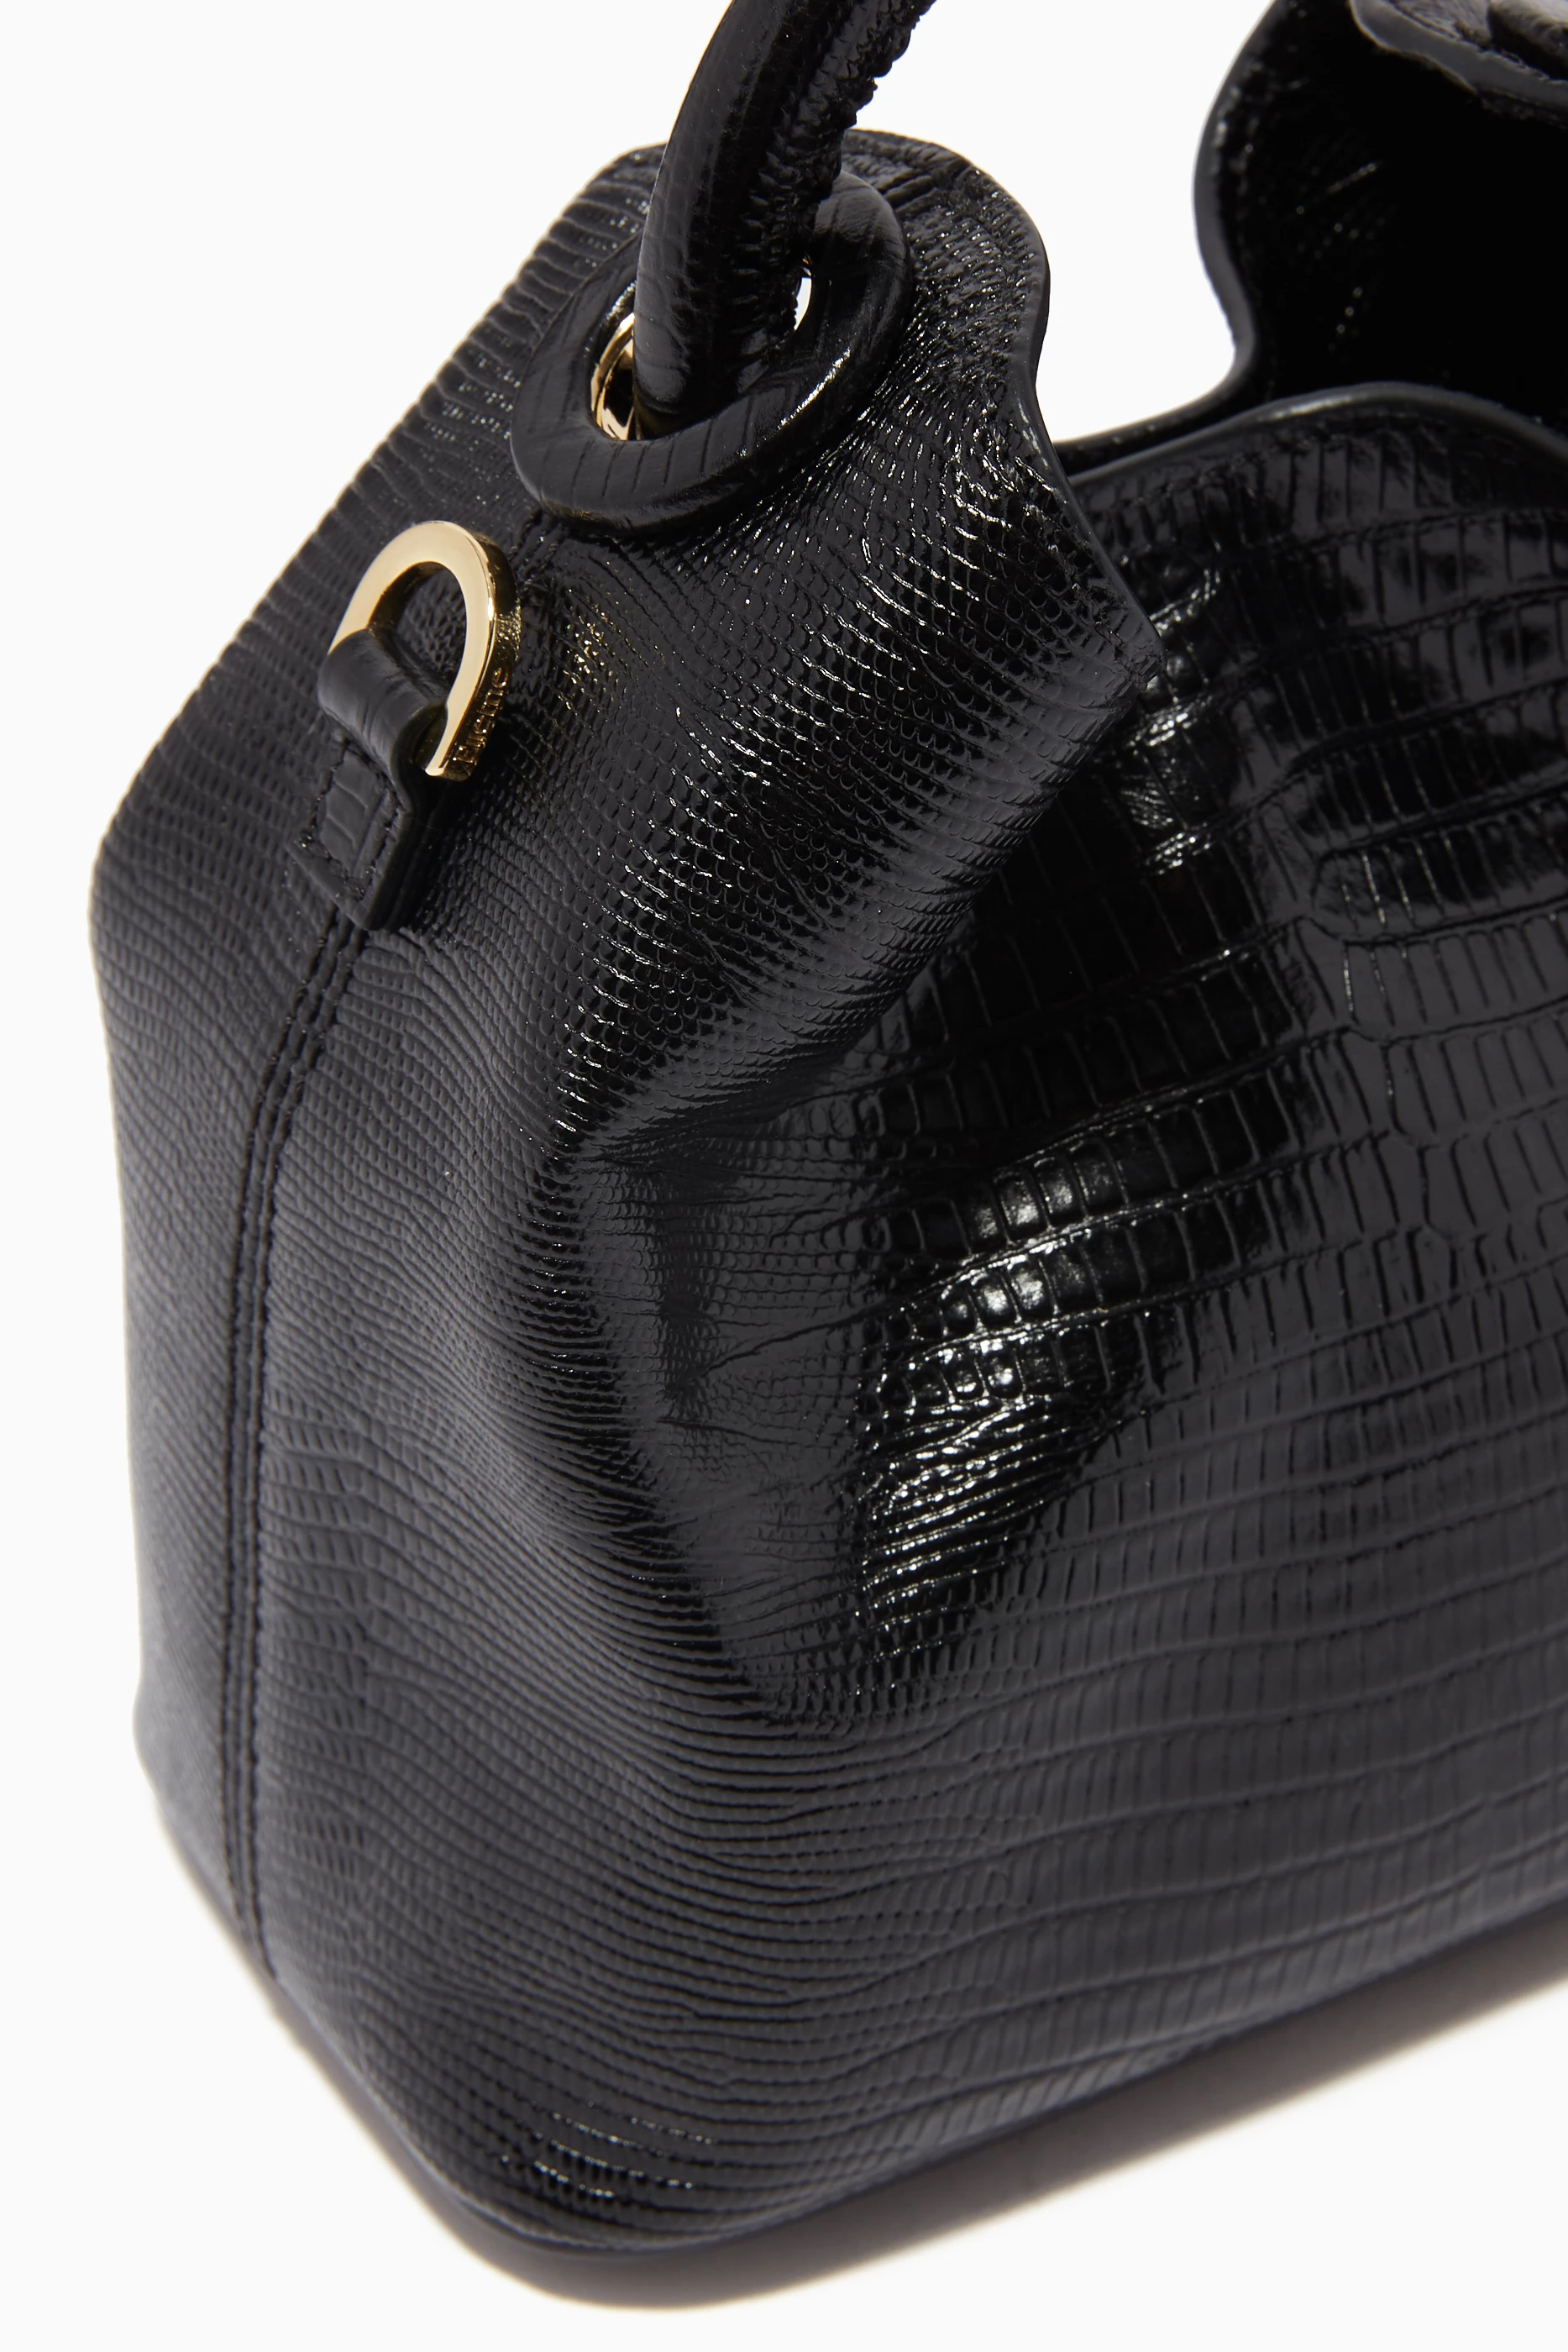 Elleme Madeleine Lizard Embossed Top Handle Bag in Black